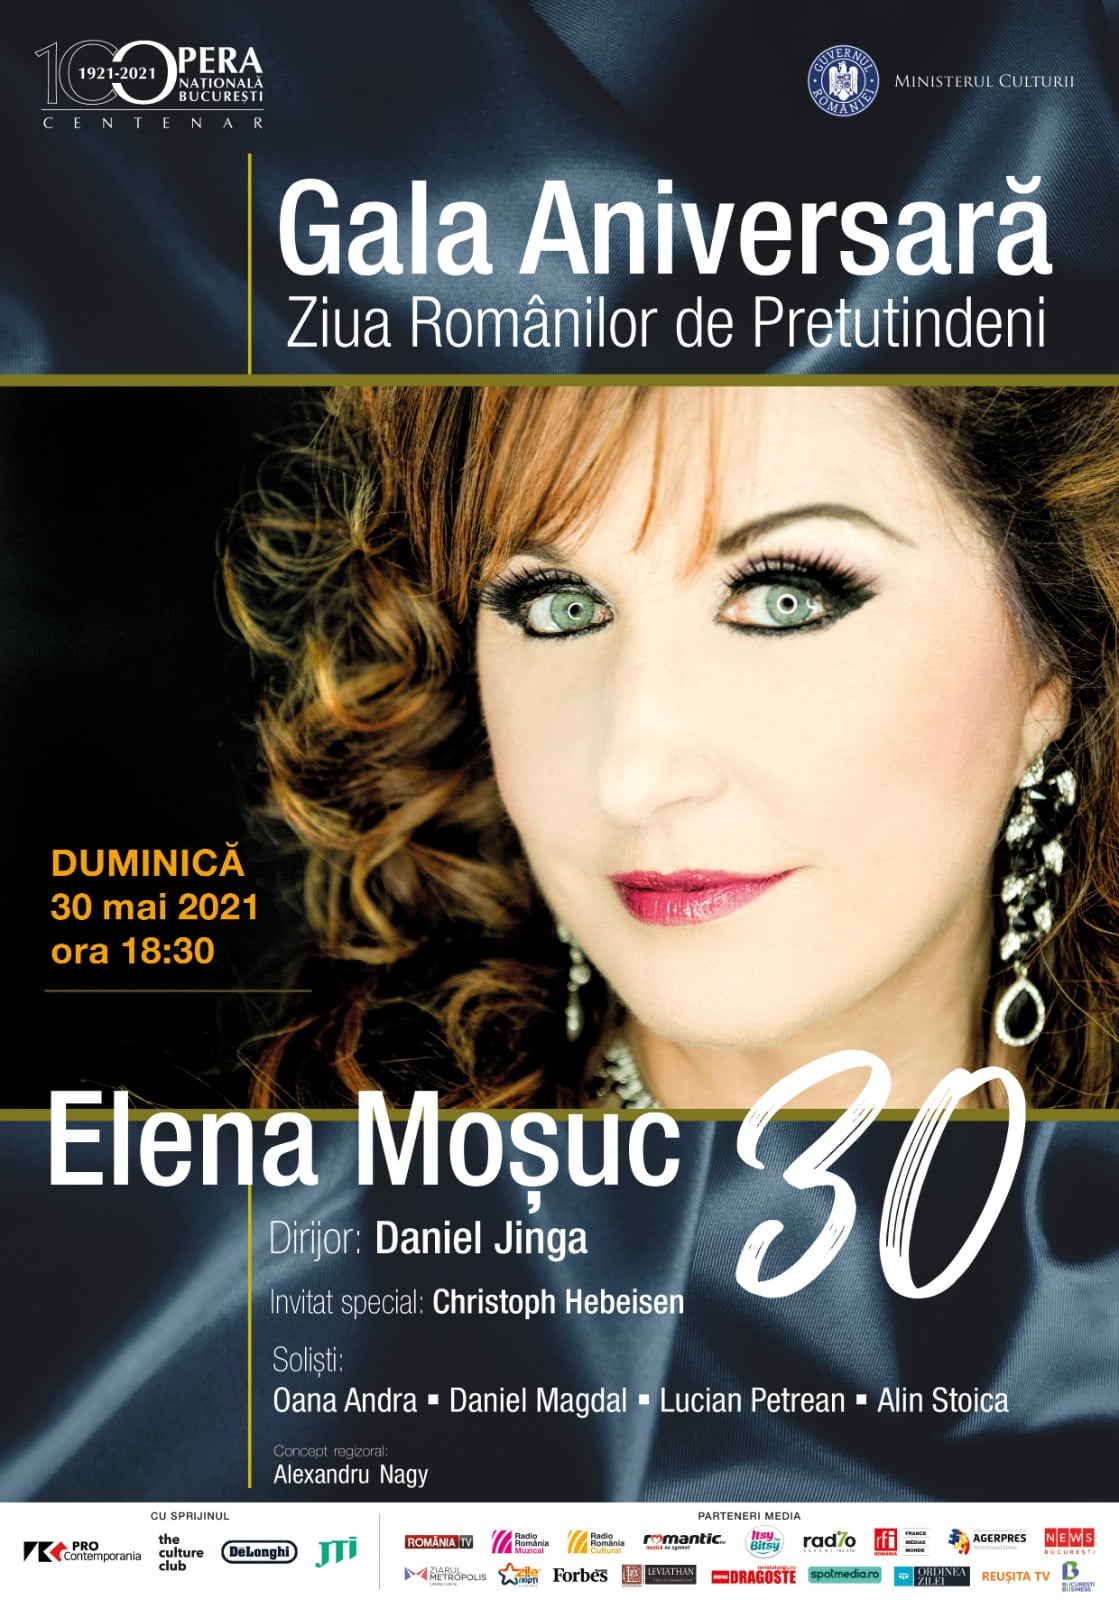 Gala Aniversară „Elena Moșuc 30”, pe scena Operei Naționale București